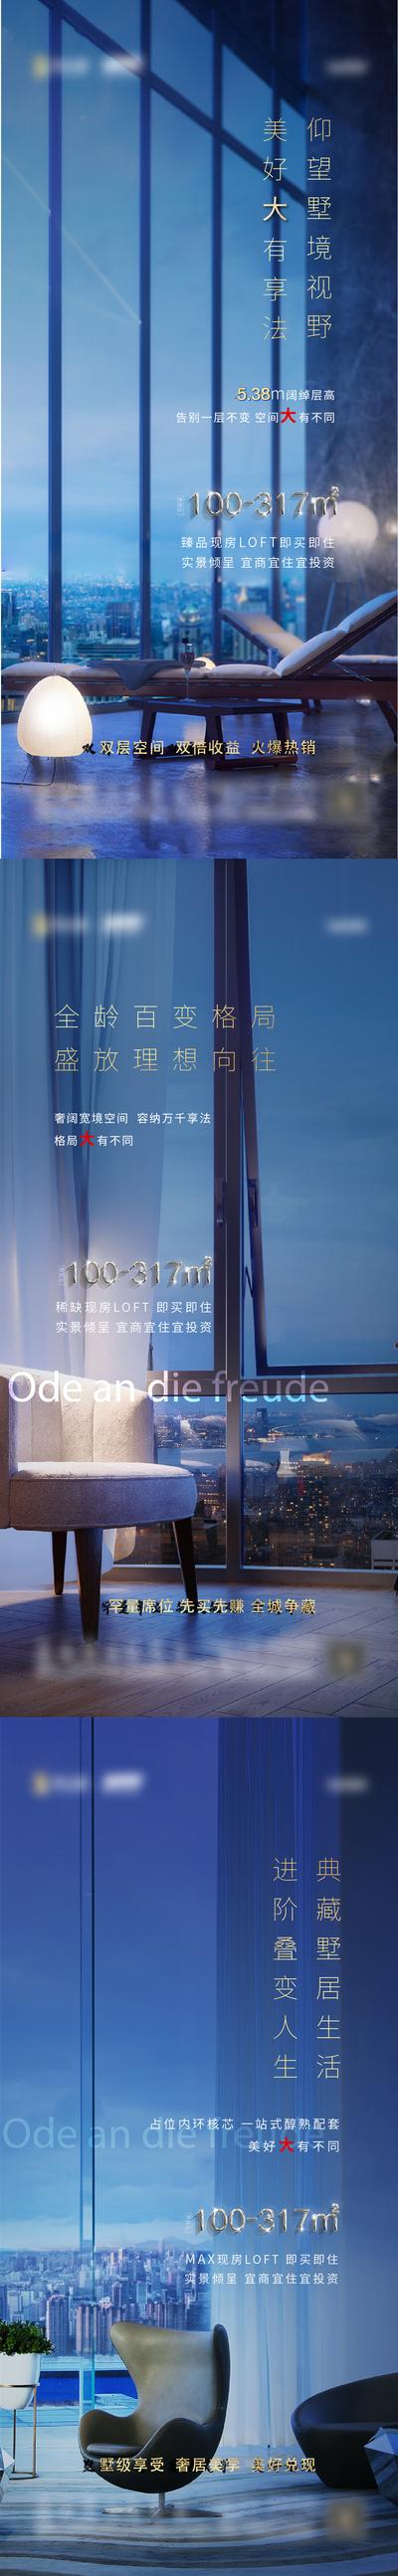 南门网 广告 海报 地产 户型 蓝色 价值 刷屏 品质